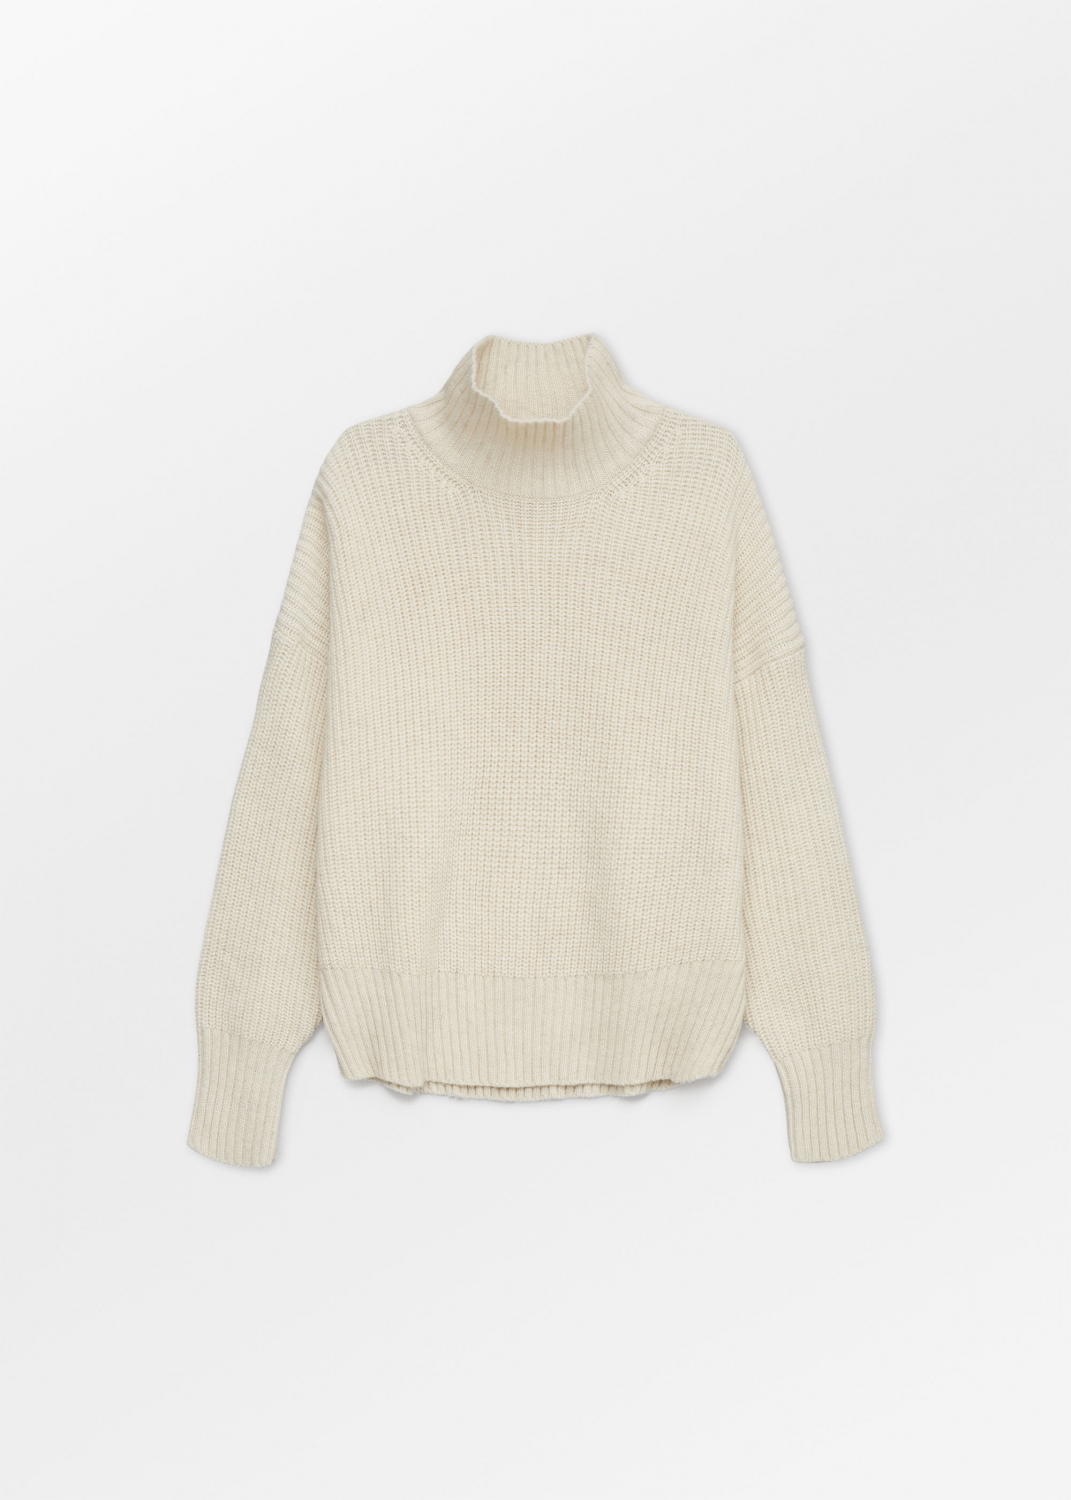 Strickwaren - Hera sweater Thumbnail